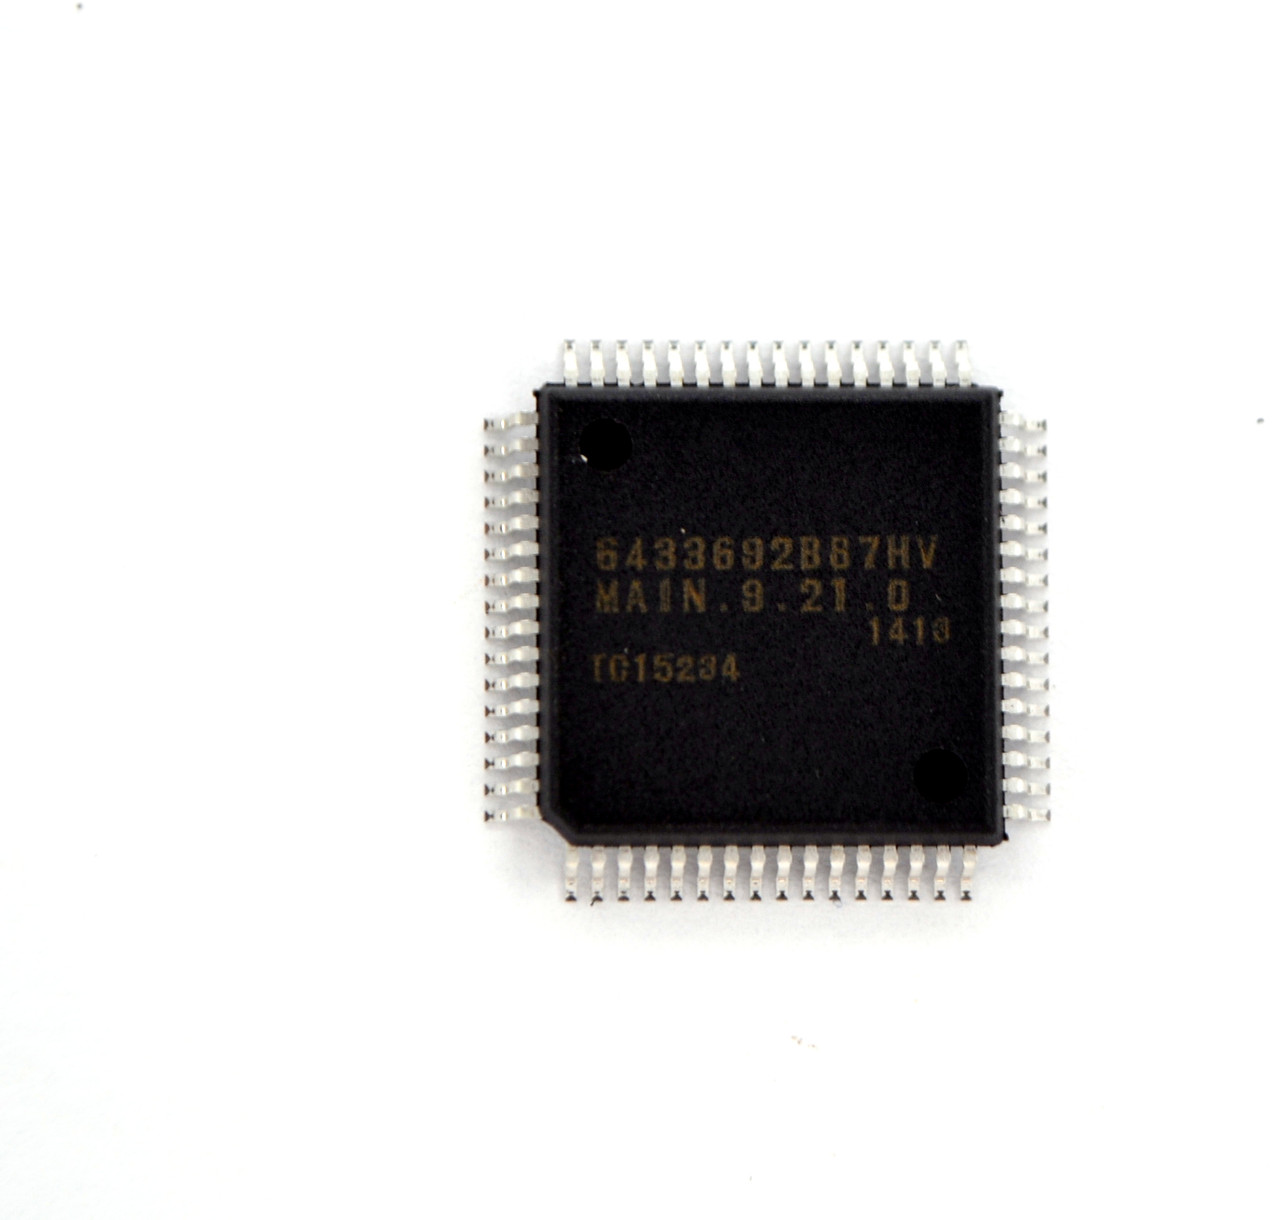 Мікроконтролер HD6433692B87HV ( підходить під заміну HD6433692B86HV)